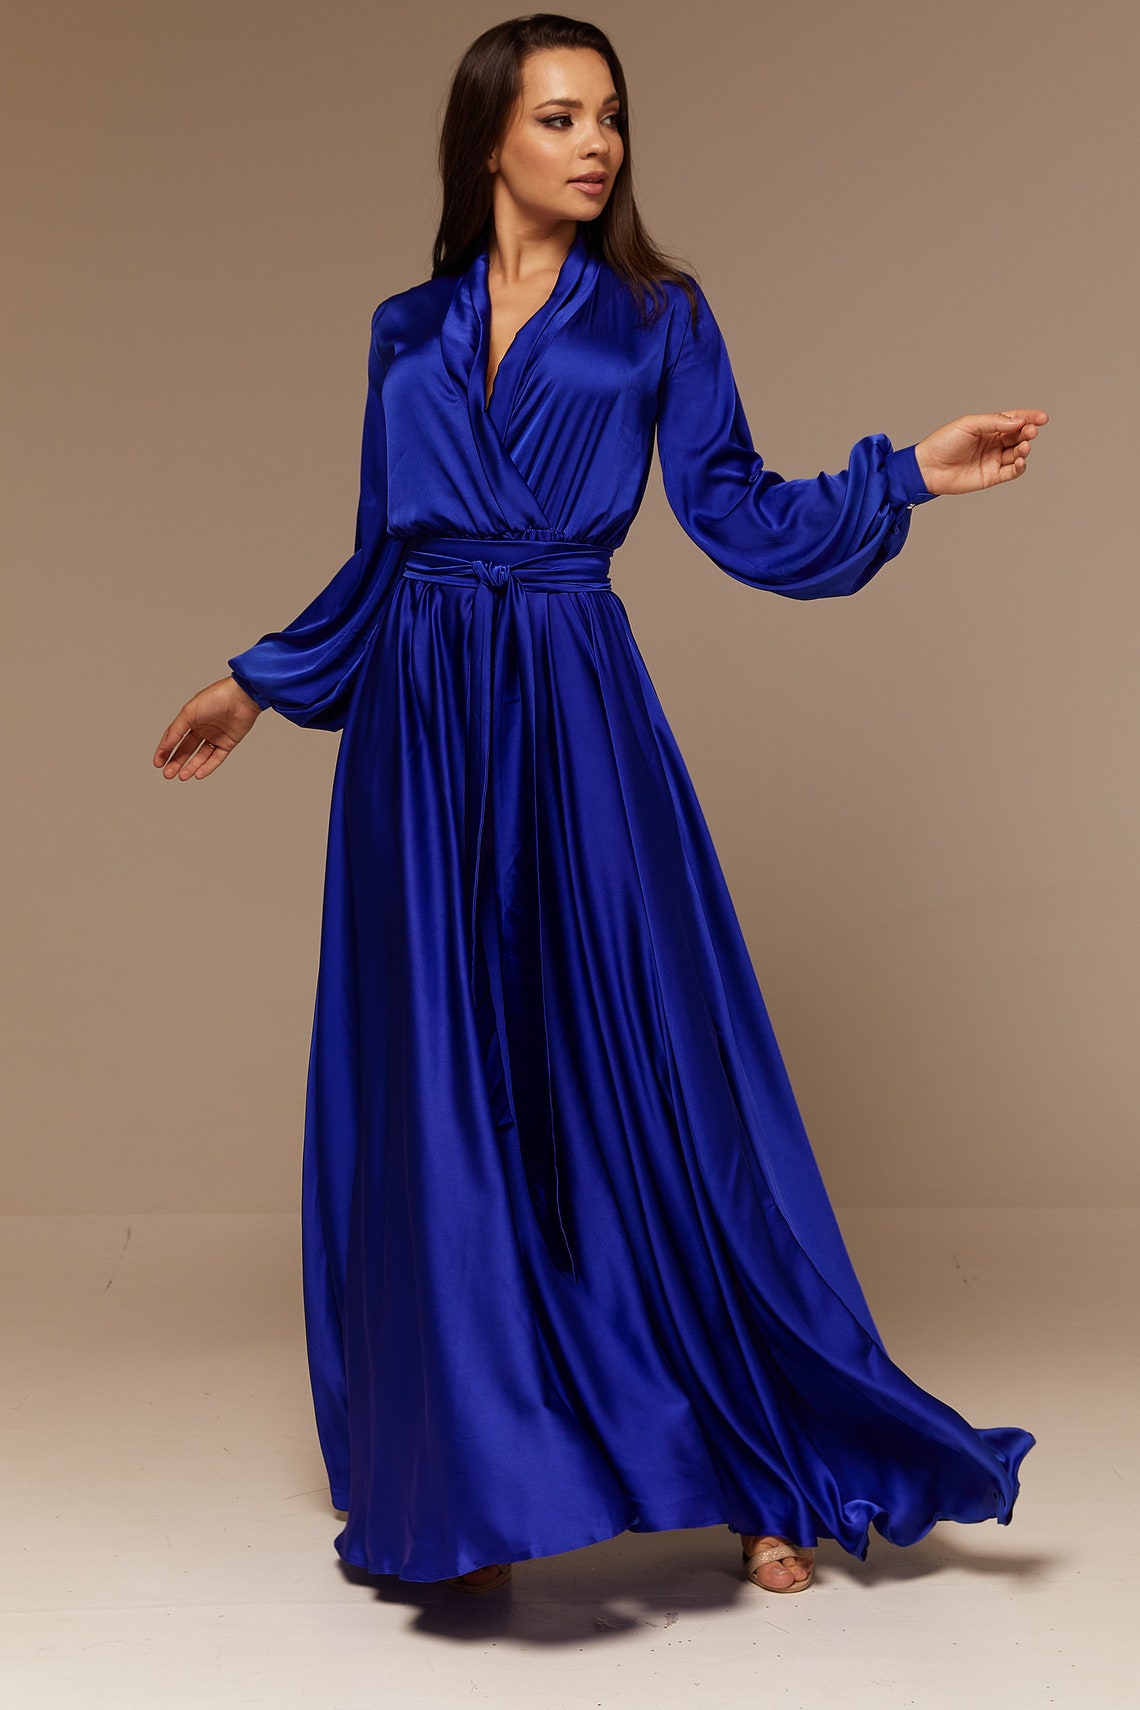 Royal Blue Silk Bridesmaid Dress Long Sleeve Maxi Satin | Etsy